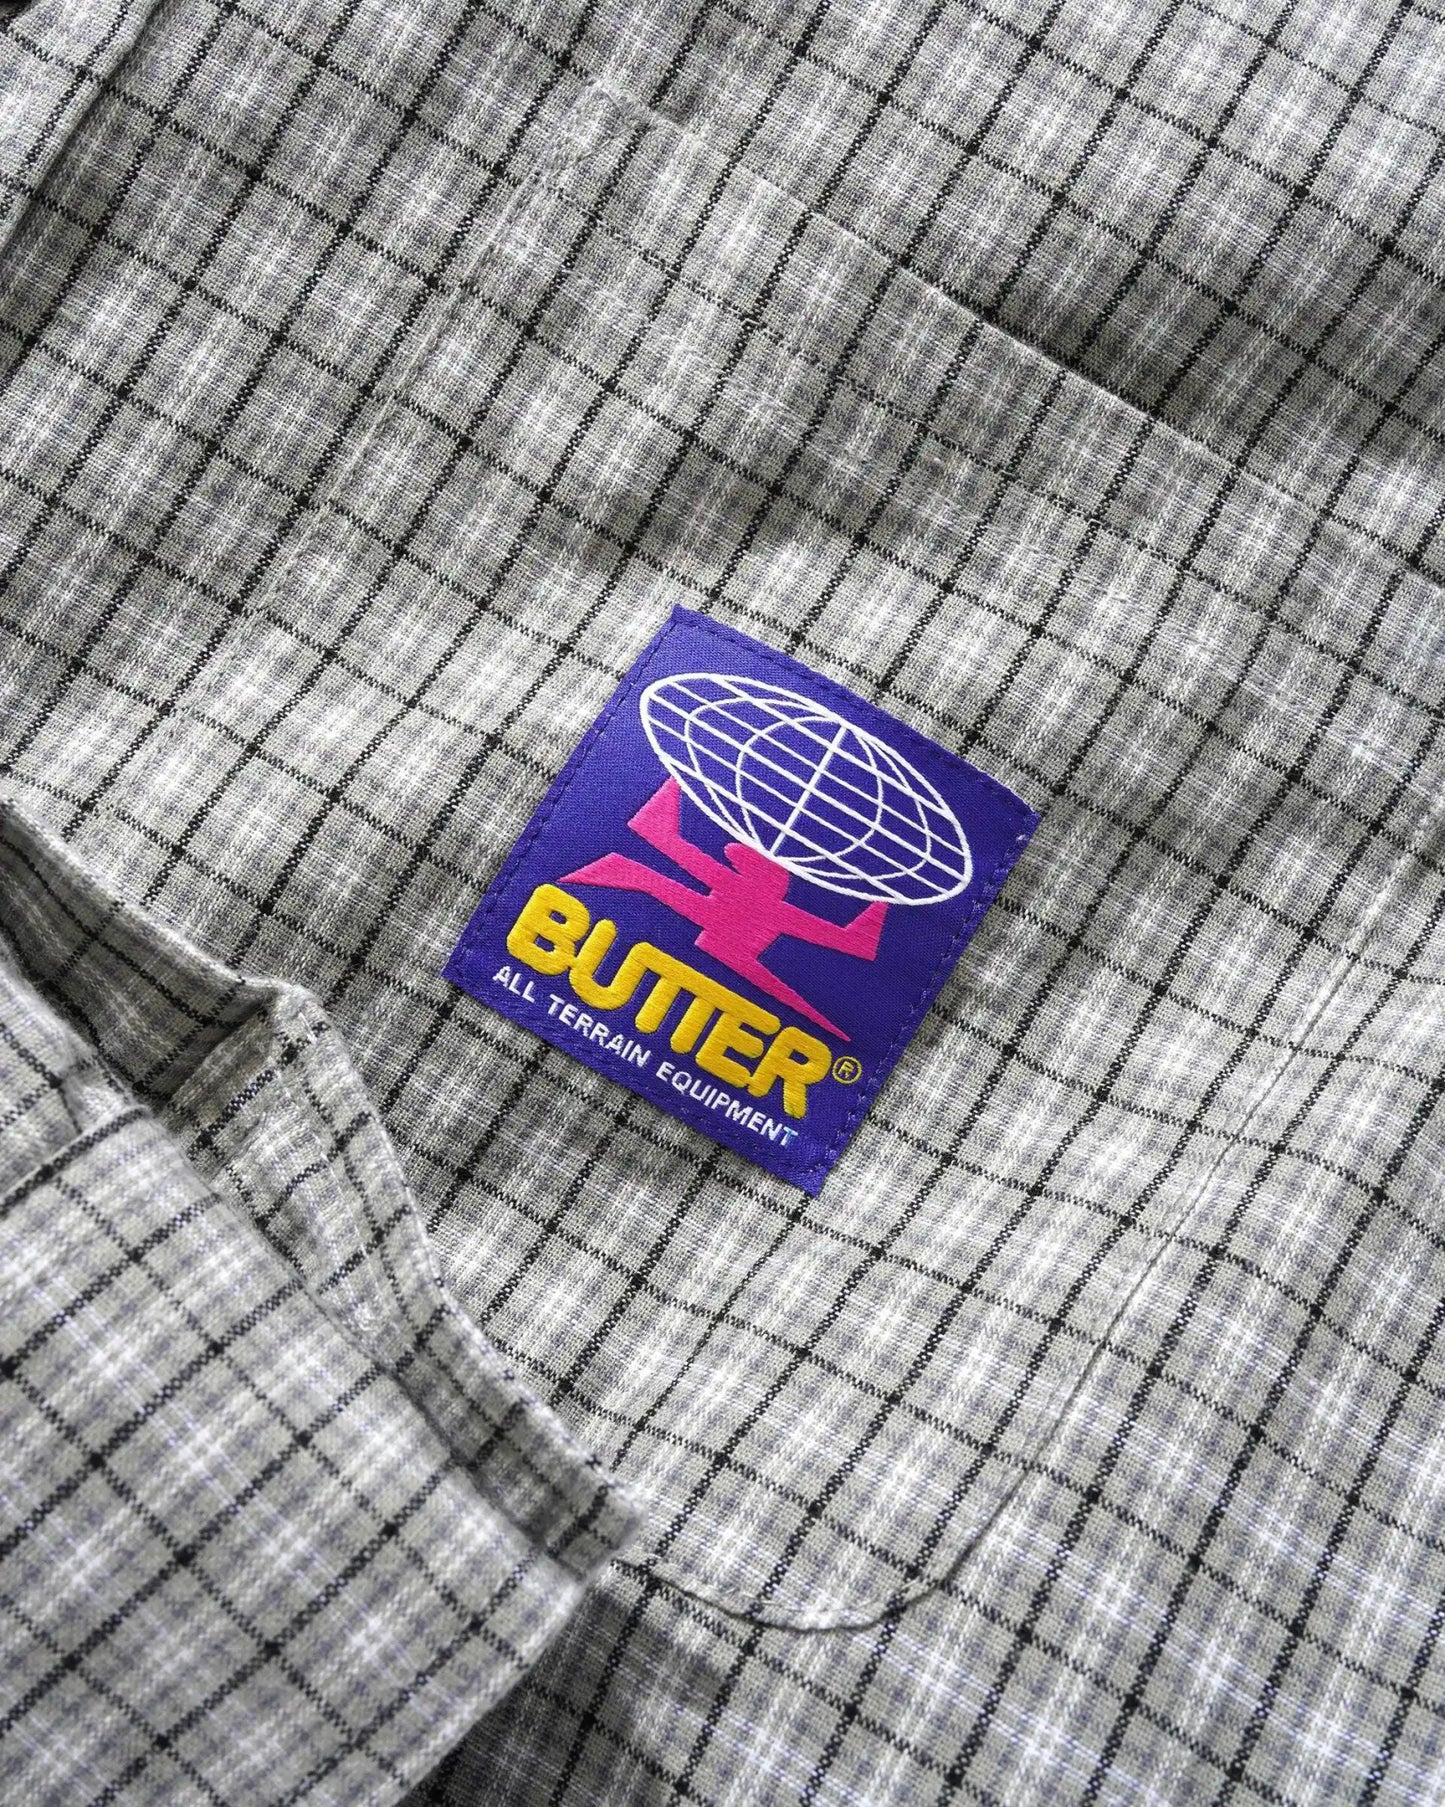 Butter Goods Terrain Long Sleeve Shirt, grey / black - Tiki Room Skateboards - 2